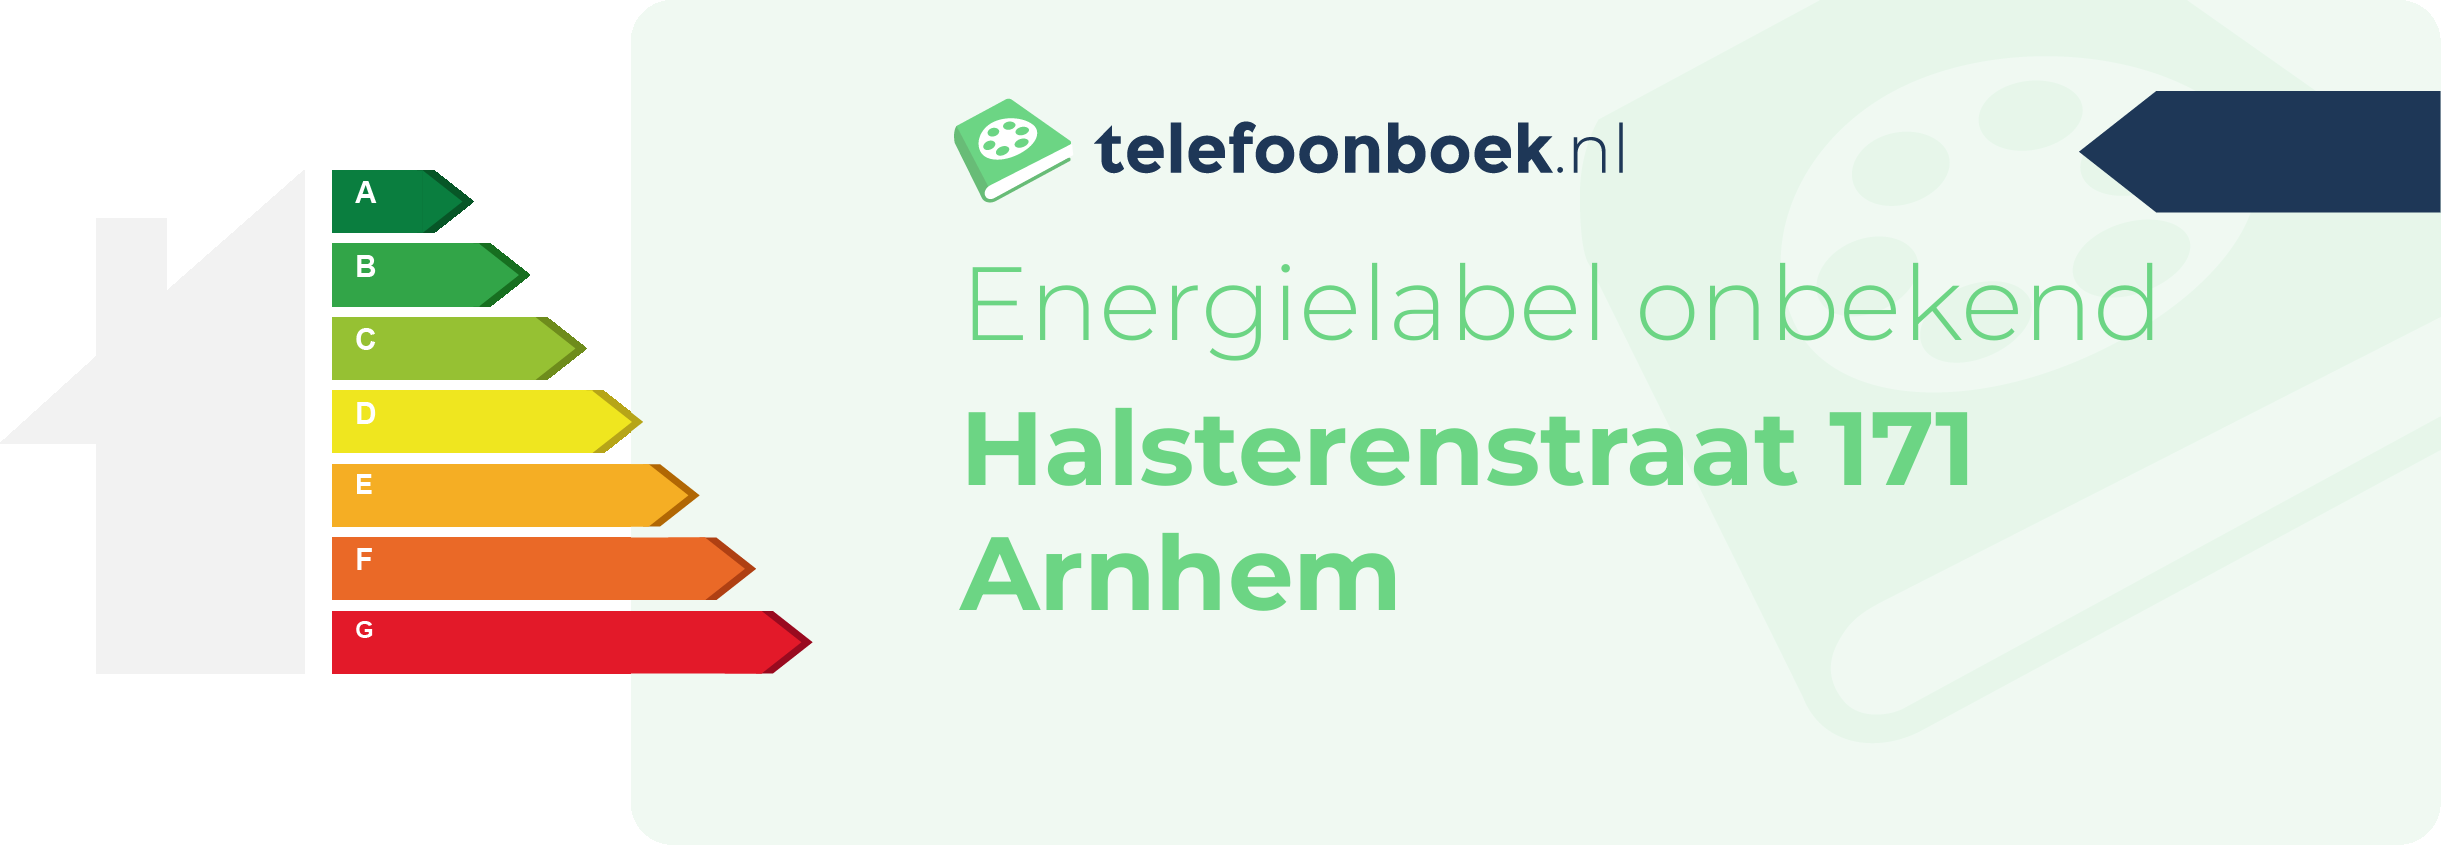 Energielabel Halsterenstraat 171 Arnhem